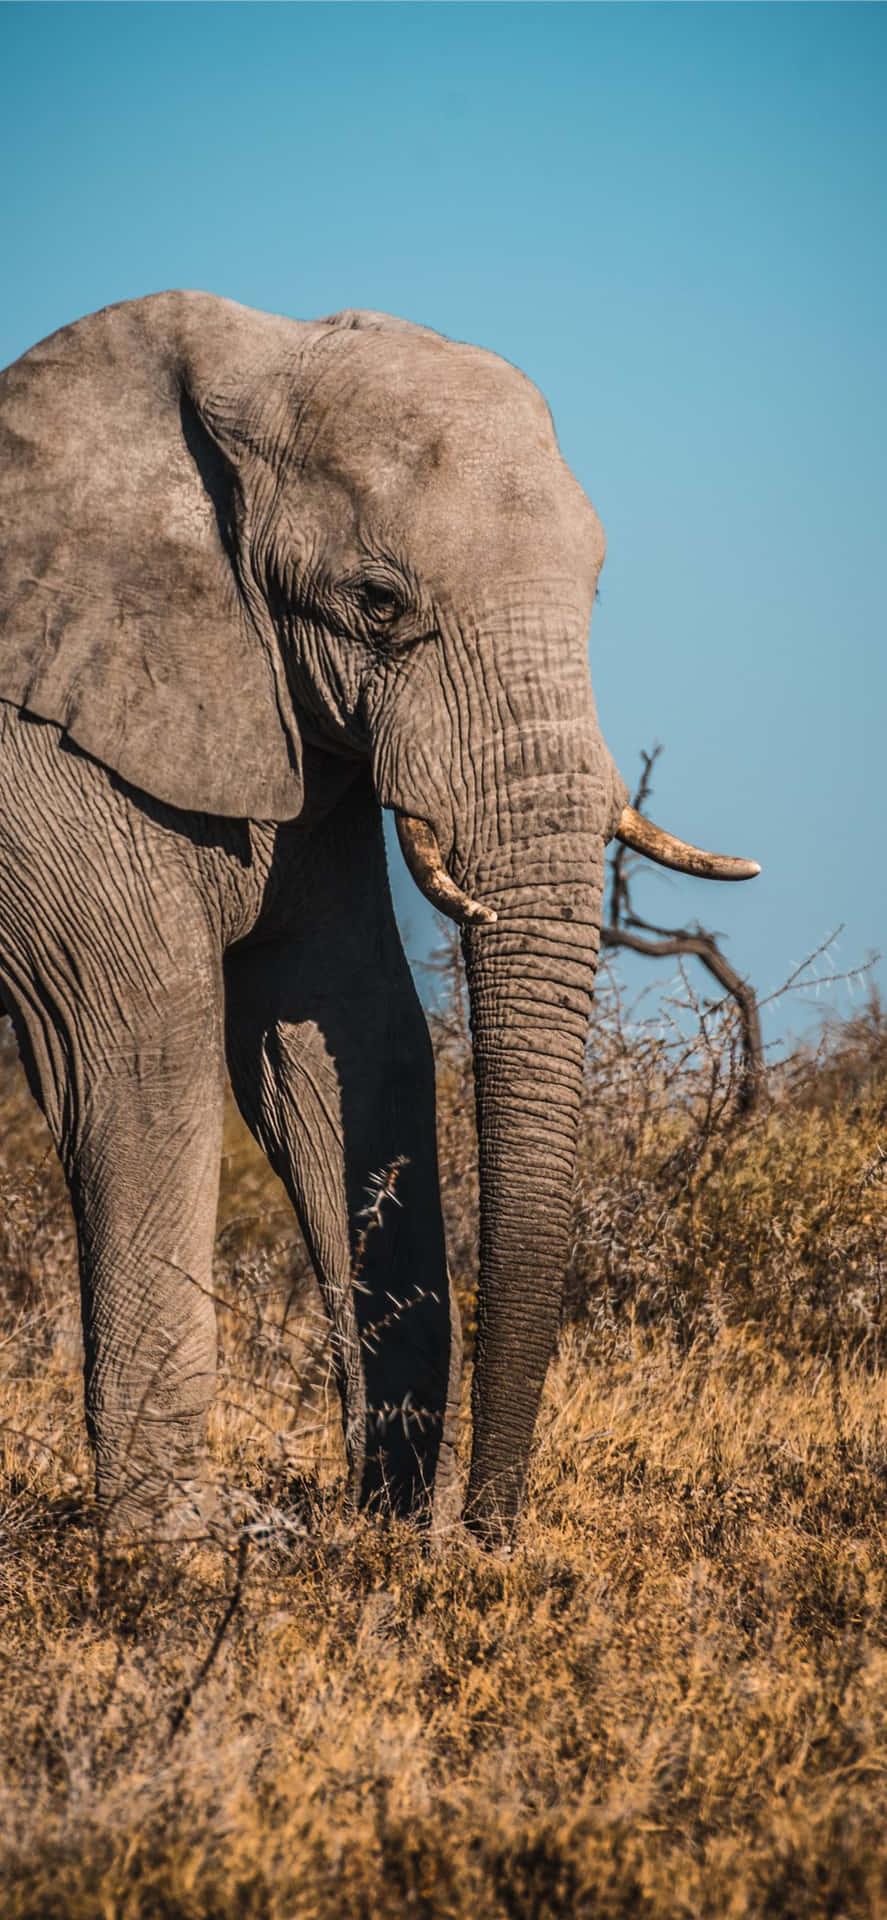 An Elephant Walking Through A Dry Field Wallpaper